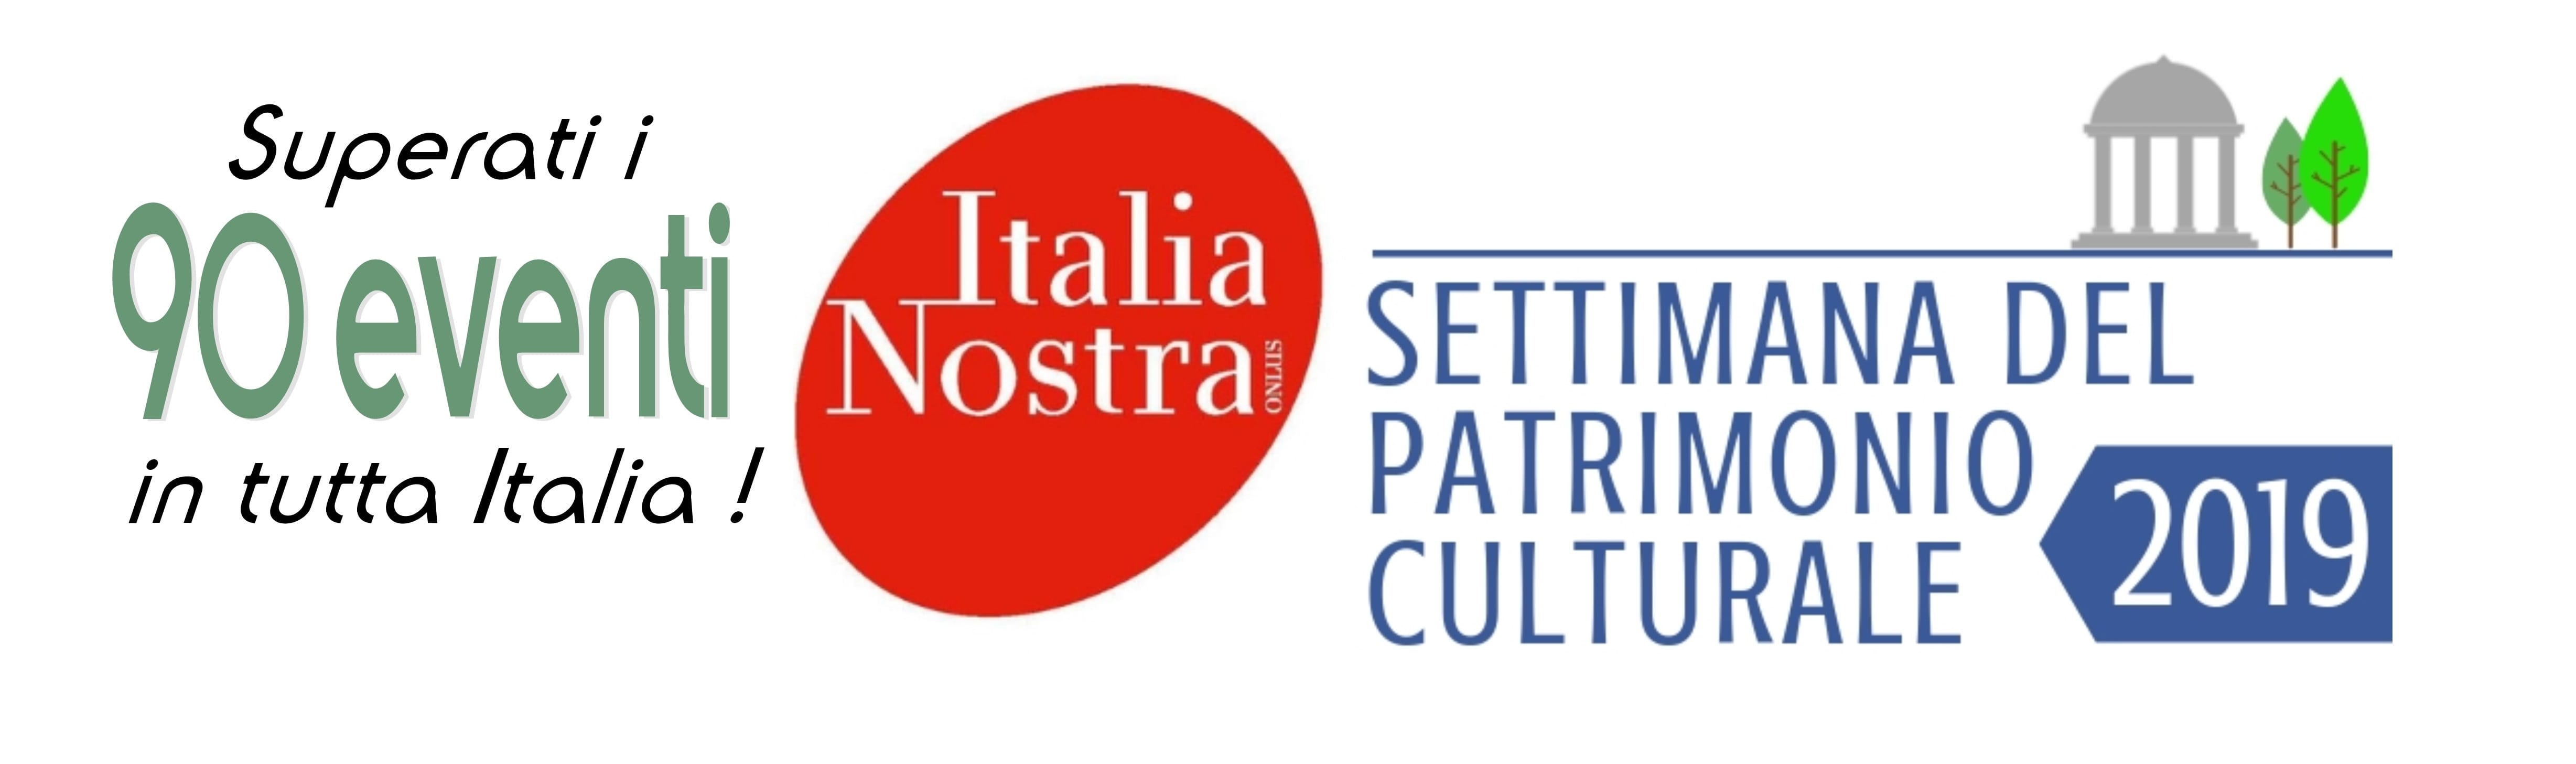 Arriva la Settimana del Patrimonio Culturale – oltre 90 eventi in tutta Italia!